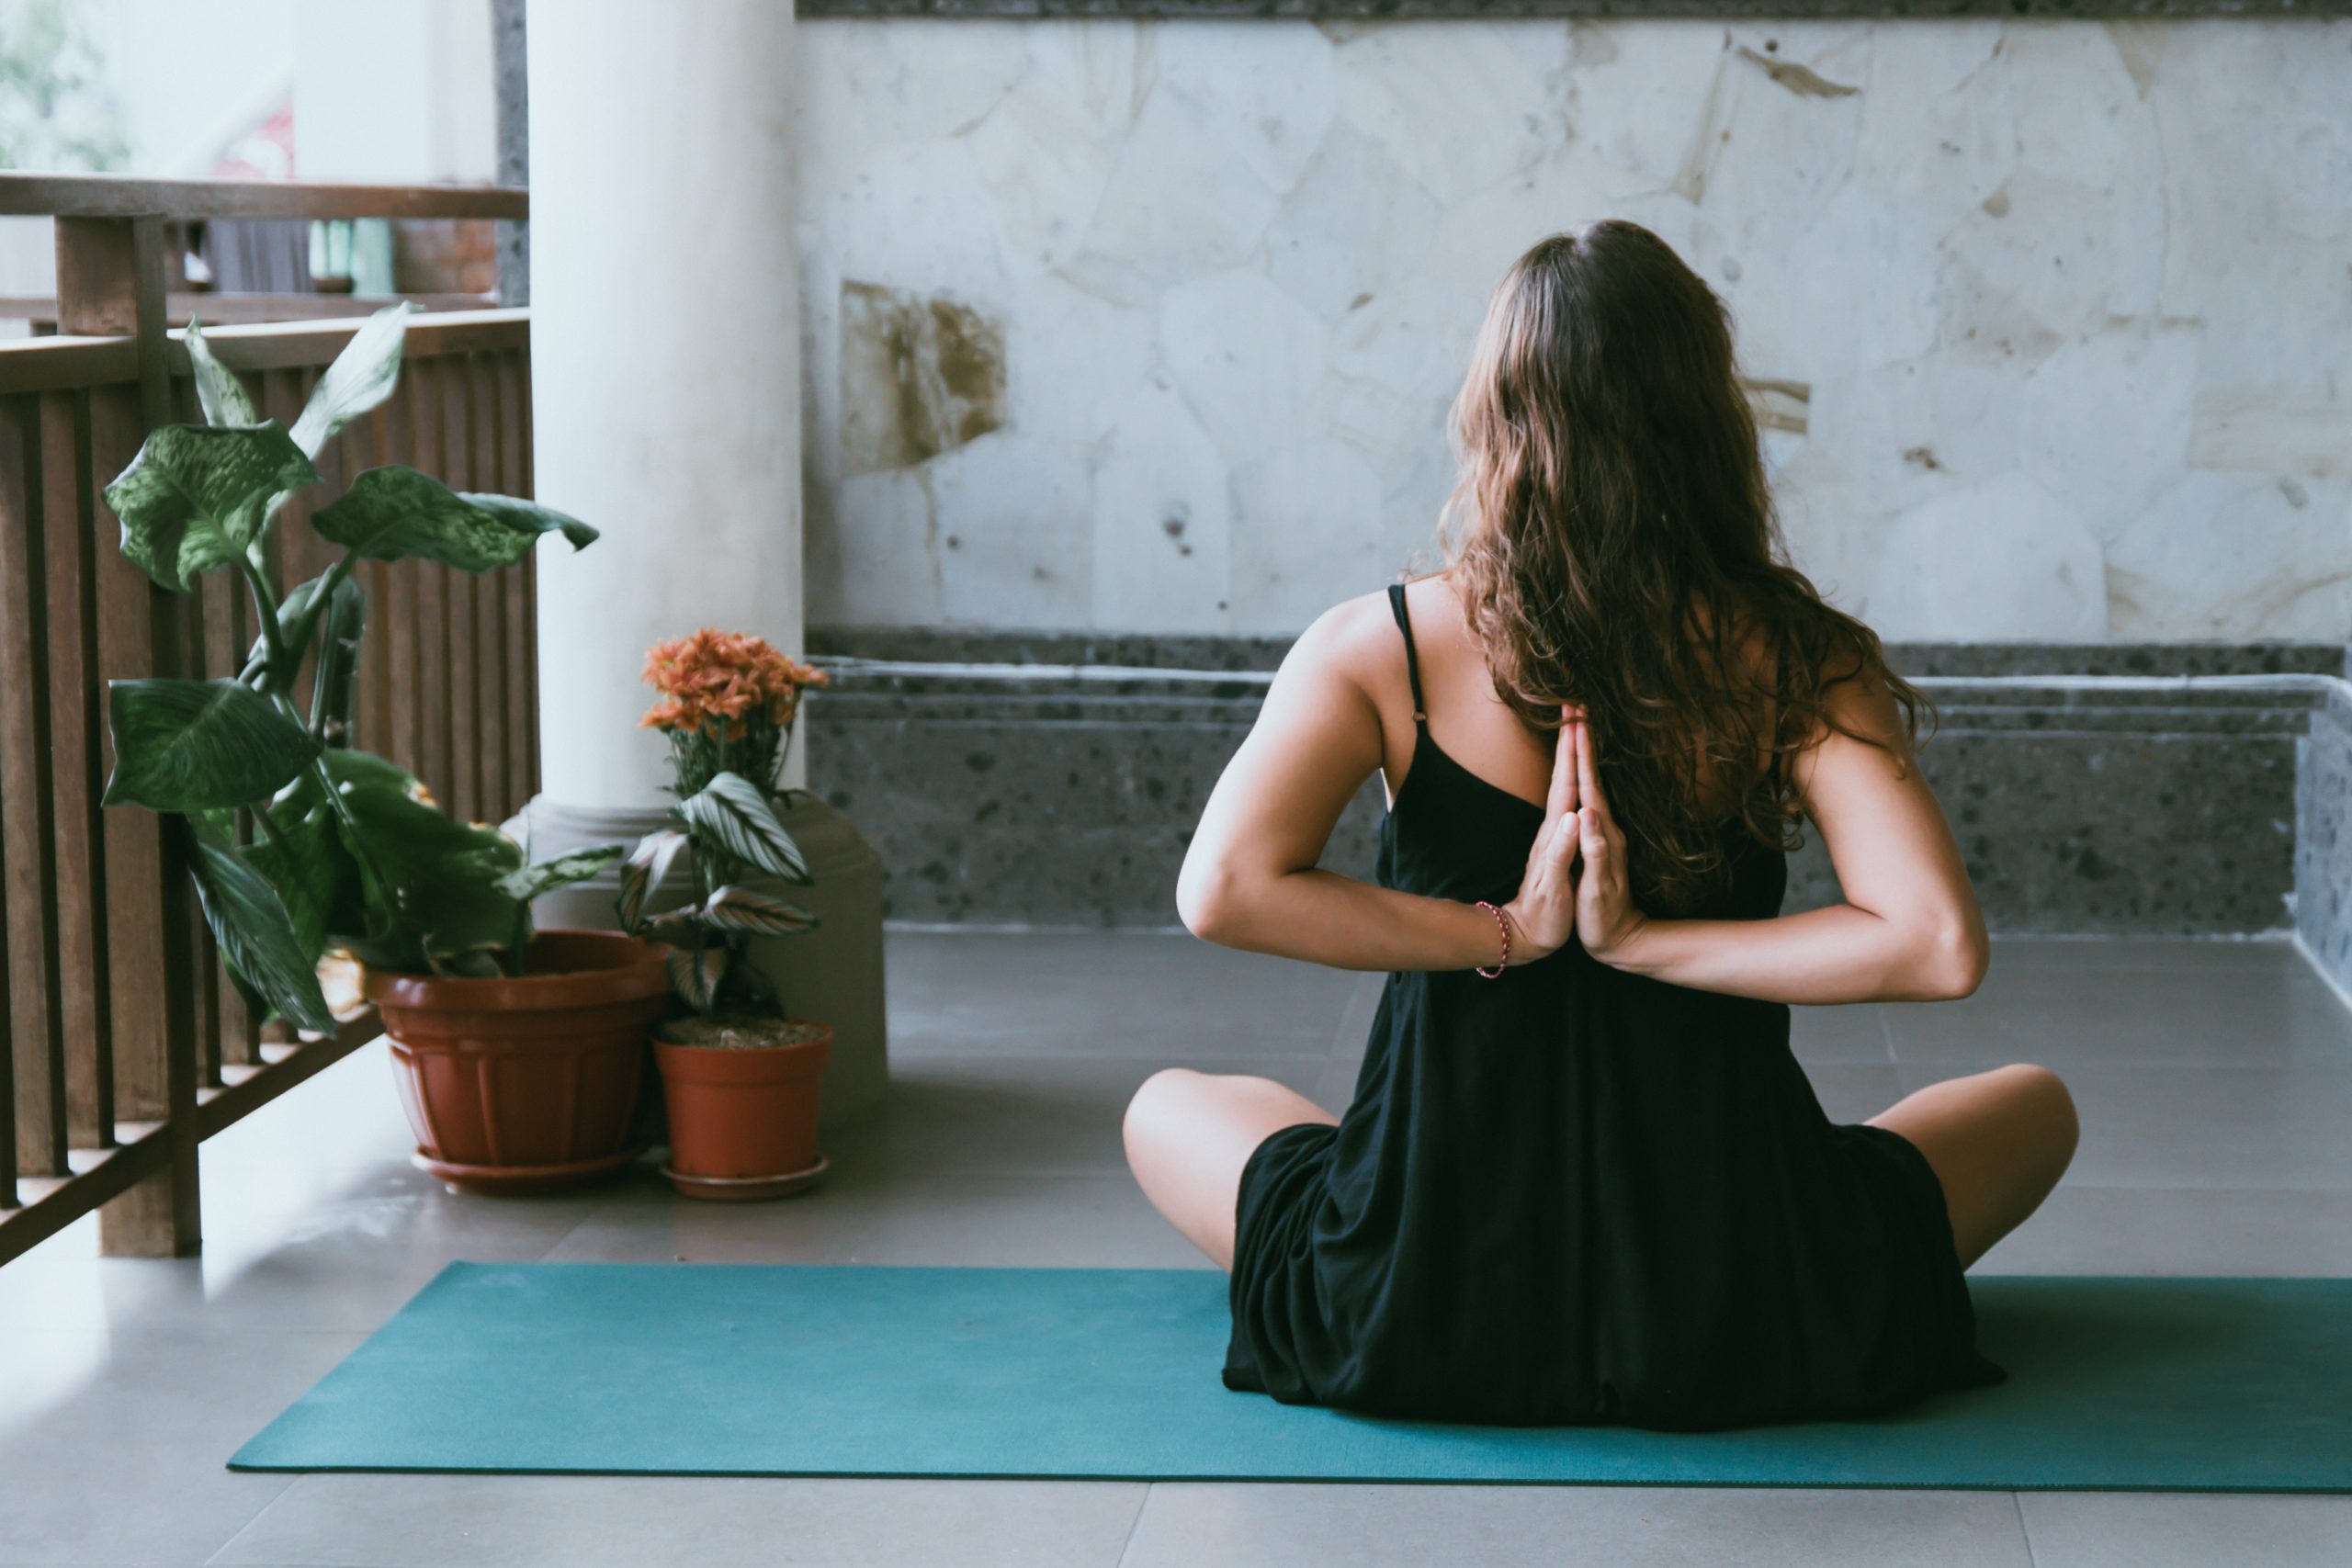 Niet naar buiten? Dan haal je de wereld gewoon naar binnen! Dit keer met een online yogasessie van Adriene Mishler, ofwel Yoga with Adriene.